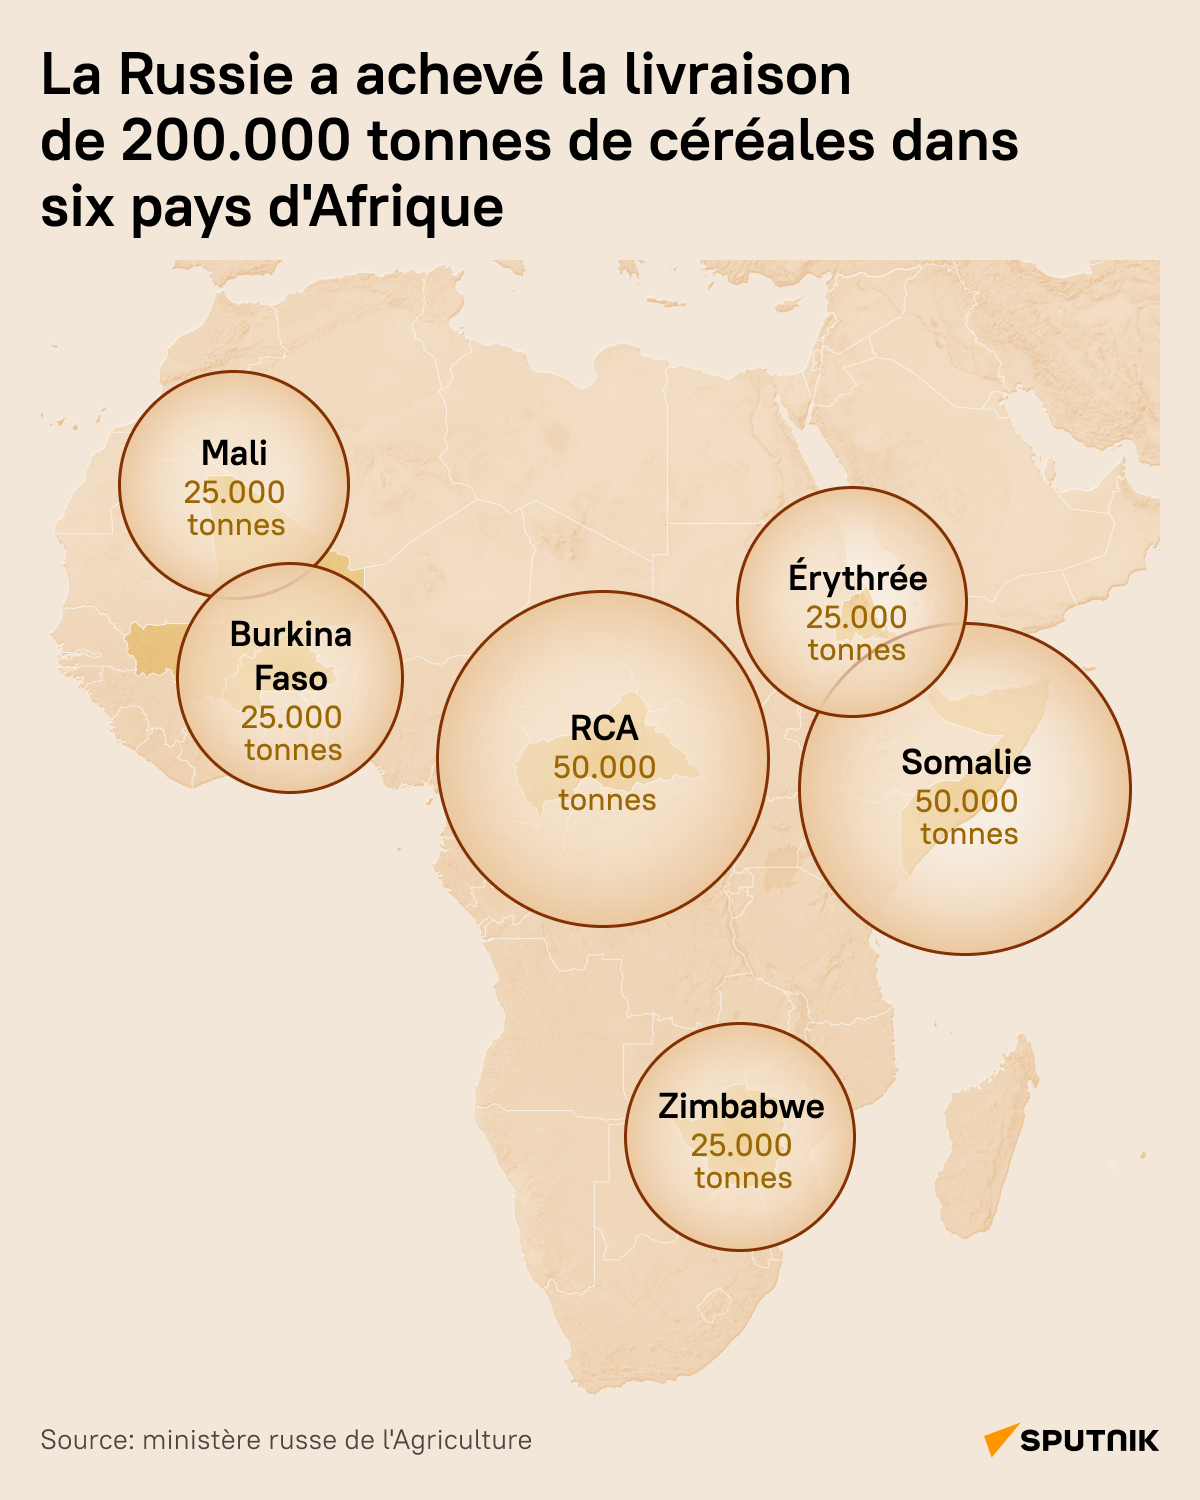 Livraison de 200.000 tonnes de céréales gratuites dans six pays d'Afrique - Sputnik Afrique